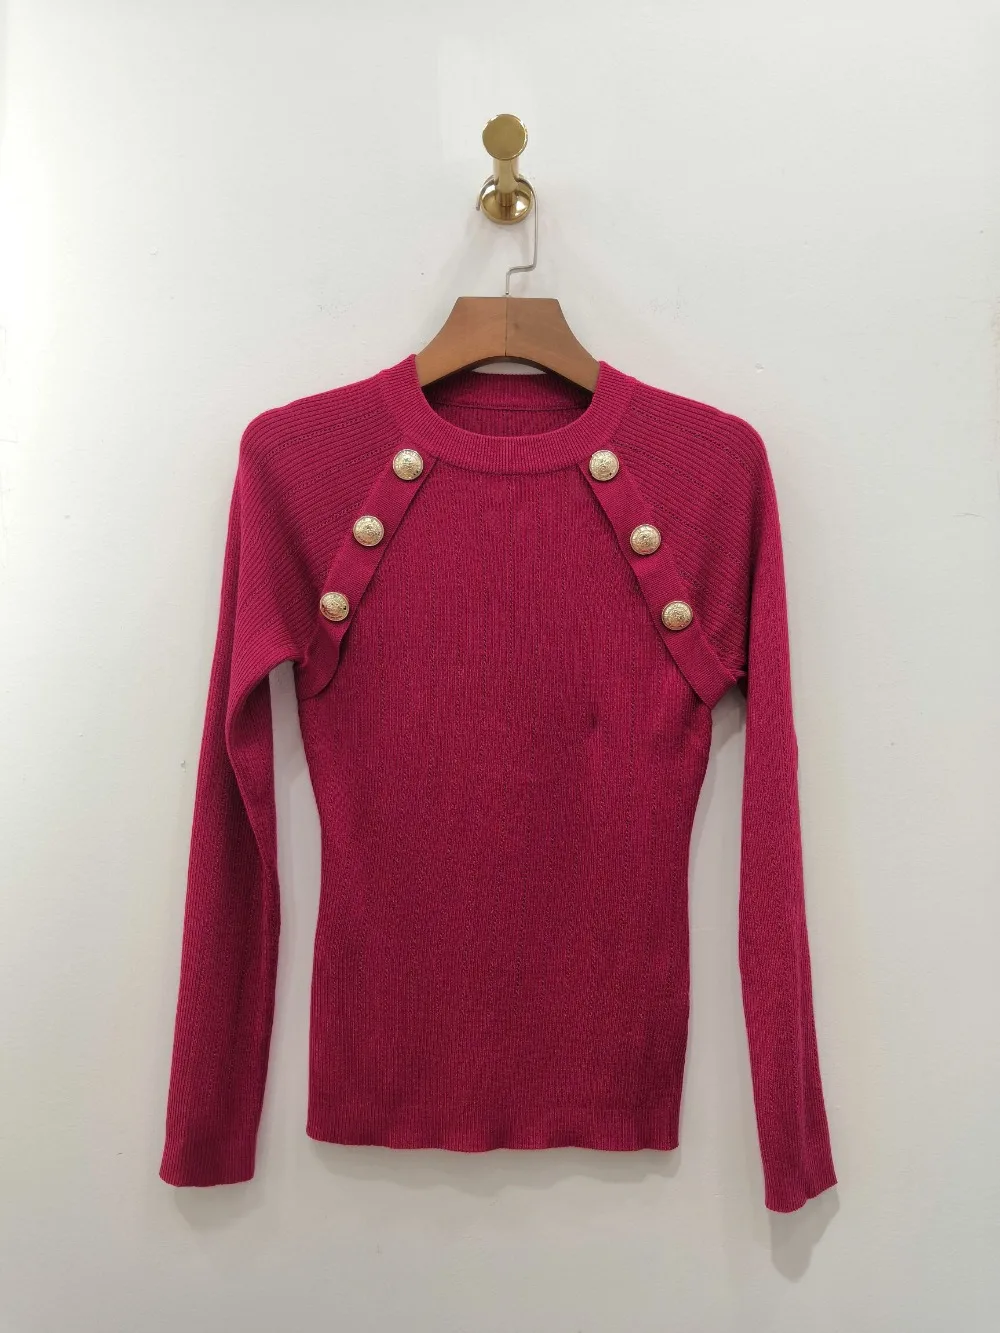 Повседневный свитер женский осенний шерстяной Тонкий джемпер женские джемперы пуловер 3 цвета ddxgz2